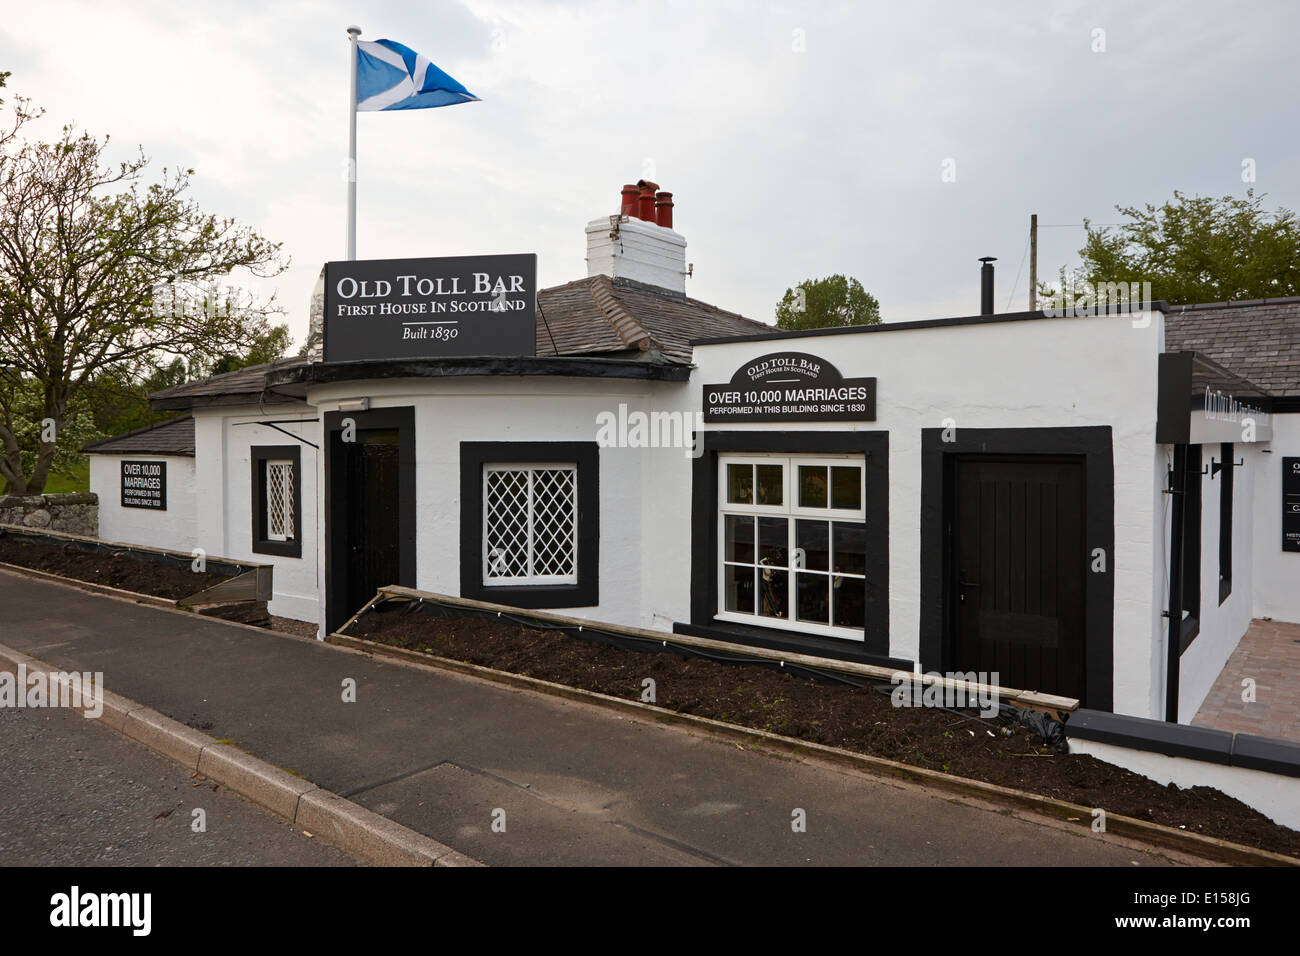 Il vecchio toll bar prima e ultima casa in Scozia sul confine Inghilterra Foto Stock